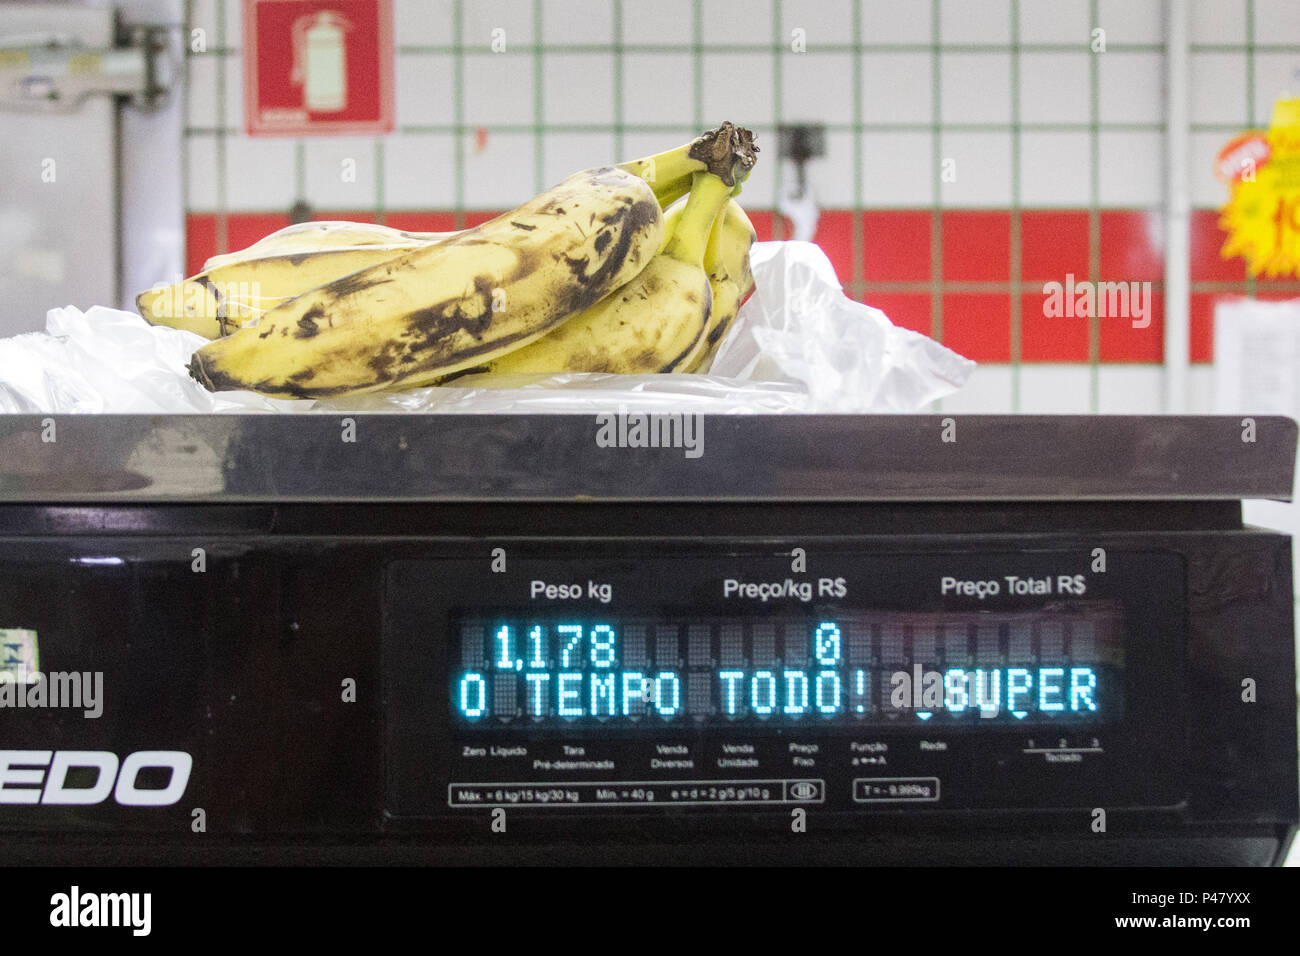 SÃO PAULO, SP - 03/02/2015. FRUTAS EM BALANÇA ELETRÔNICA. Penca de bananas em balança eletrônica. Foto: Walmor Carvalho / Fotoarena Stock Photo